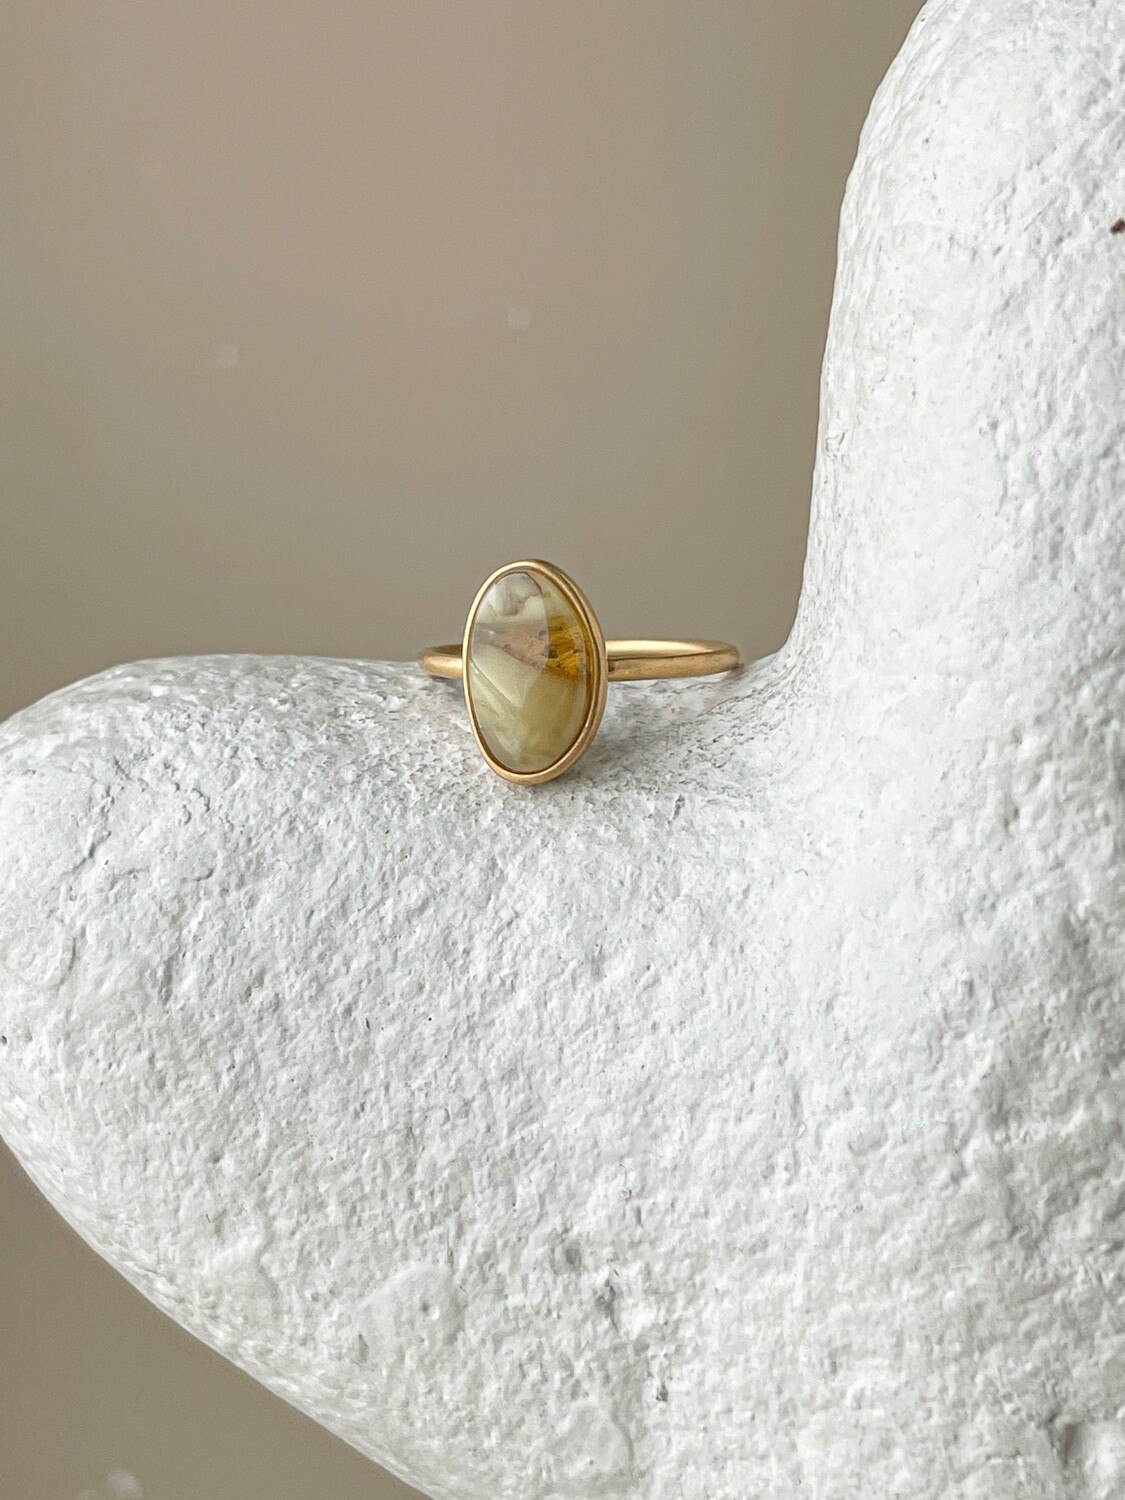 Тонкое кольцо с медовым янтарем, размер 17,5